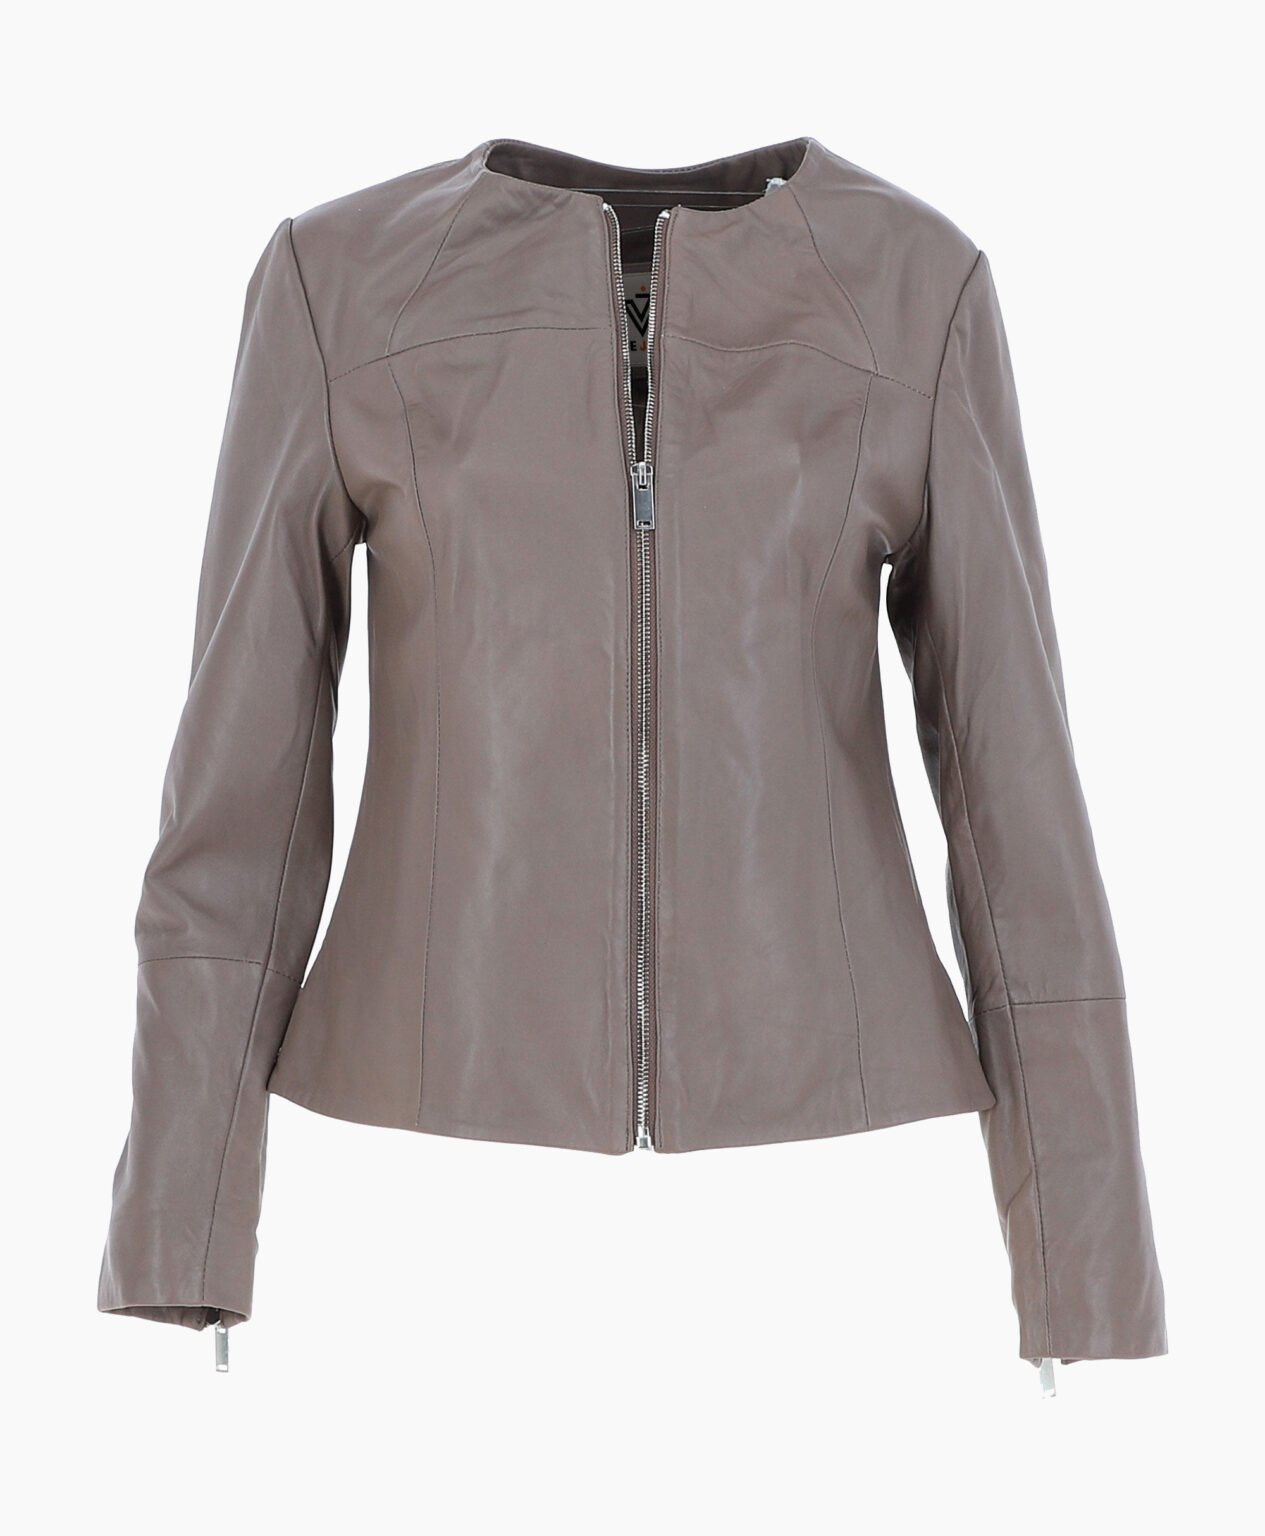 vogue-jacket-leather-fashion-jacket-gray-elizabeth-image200